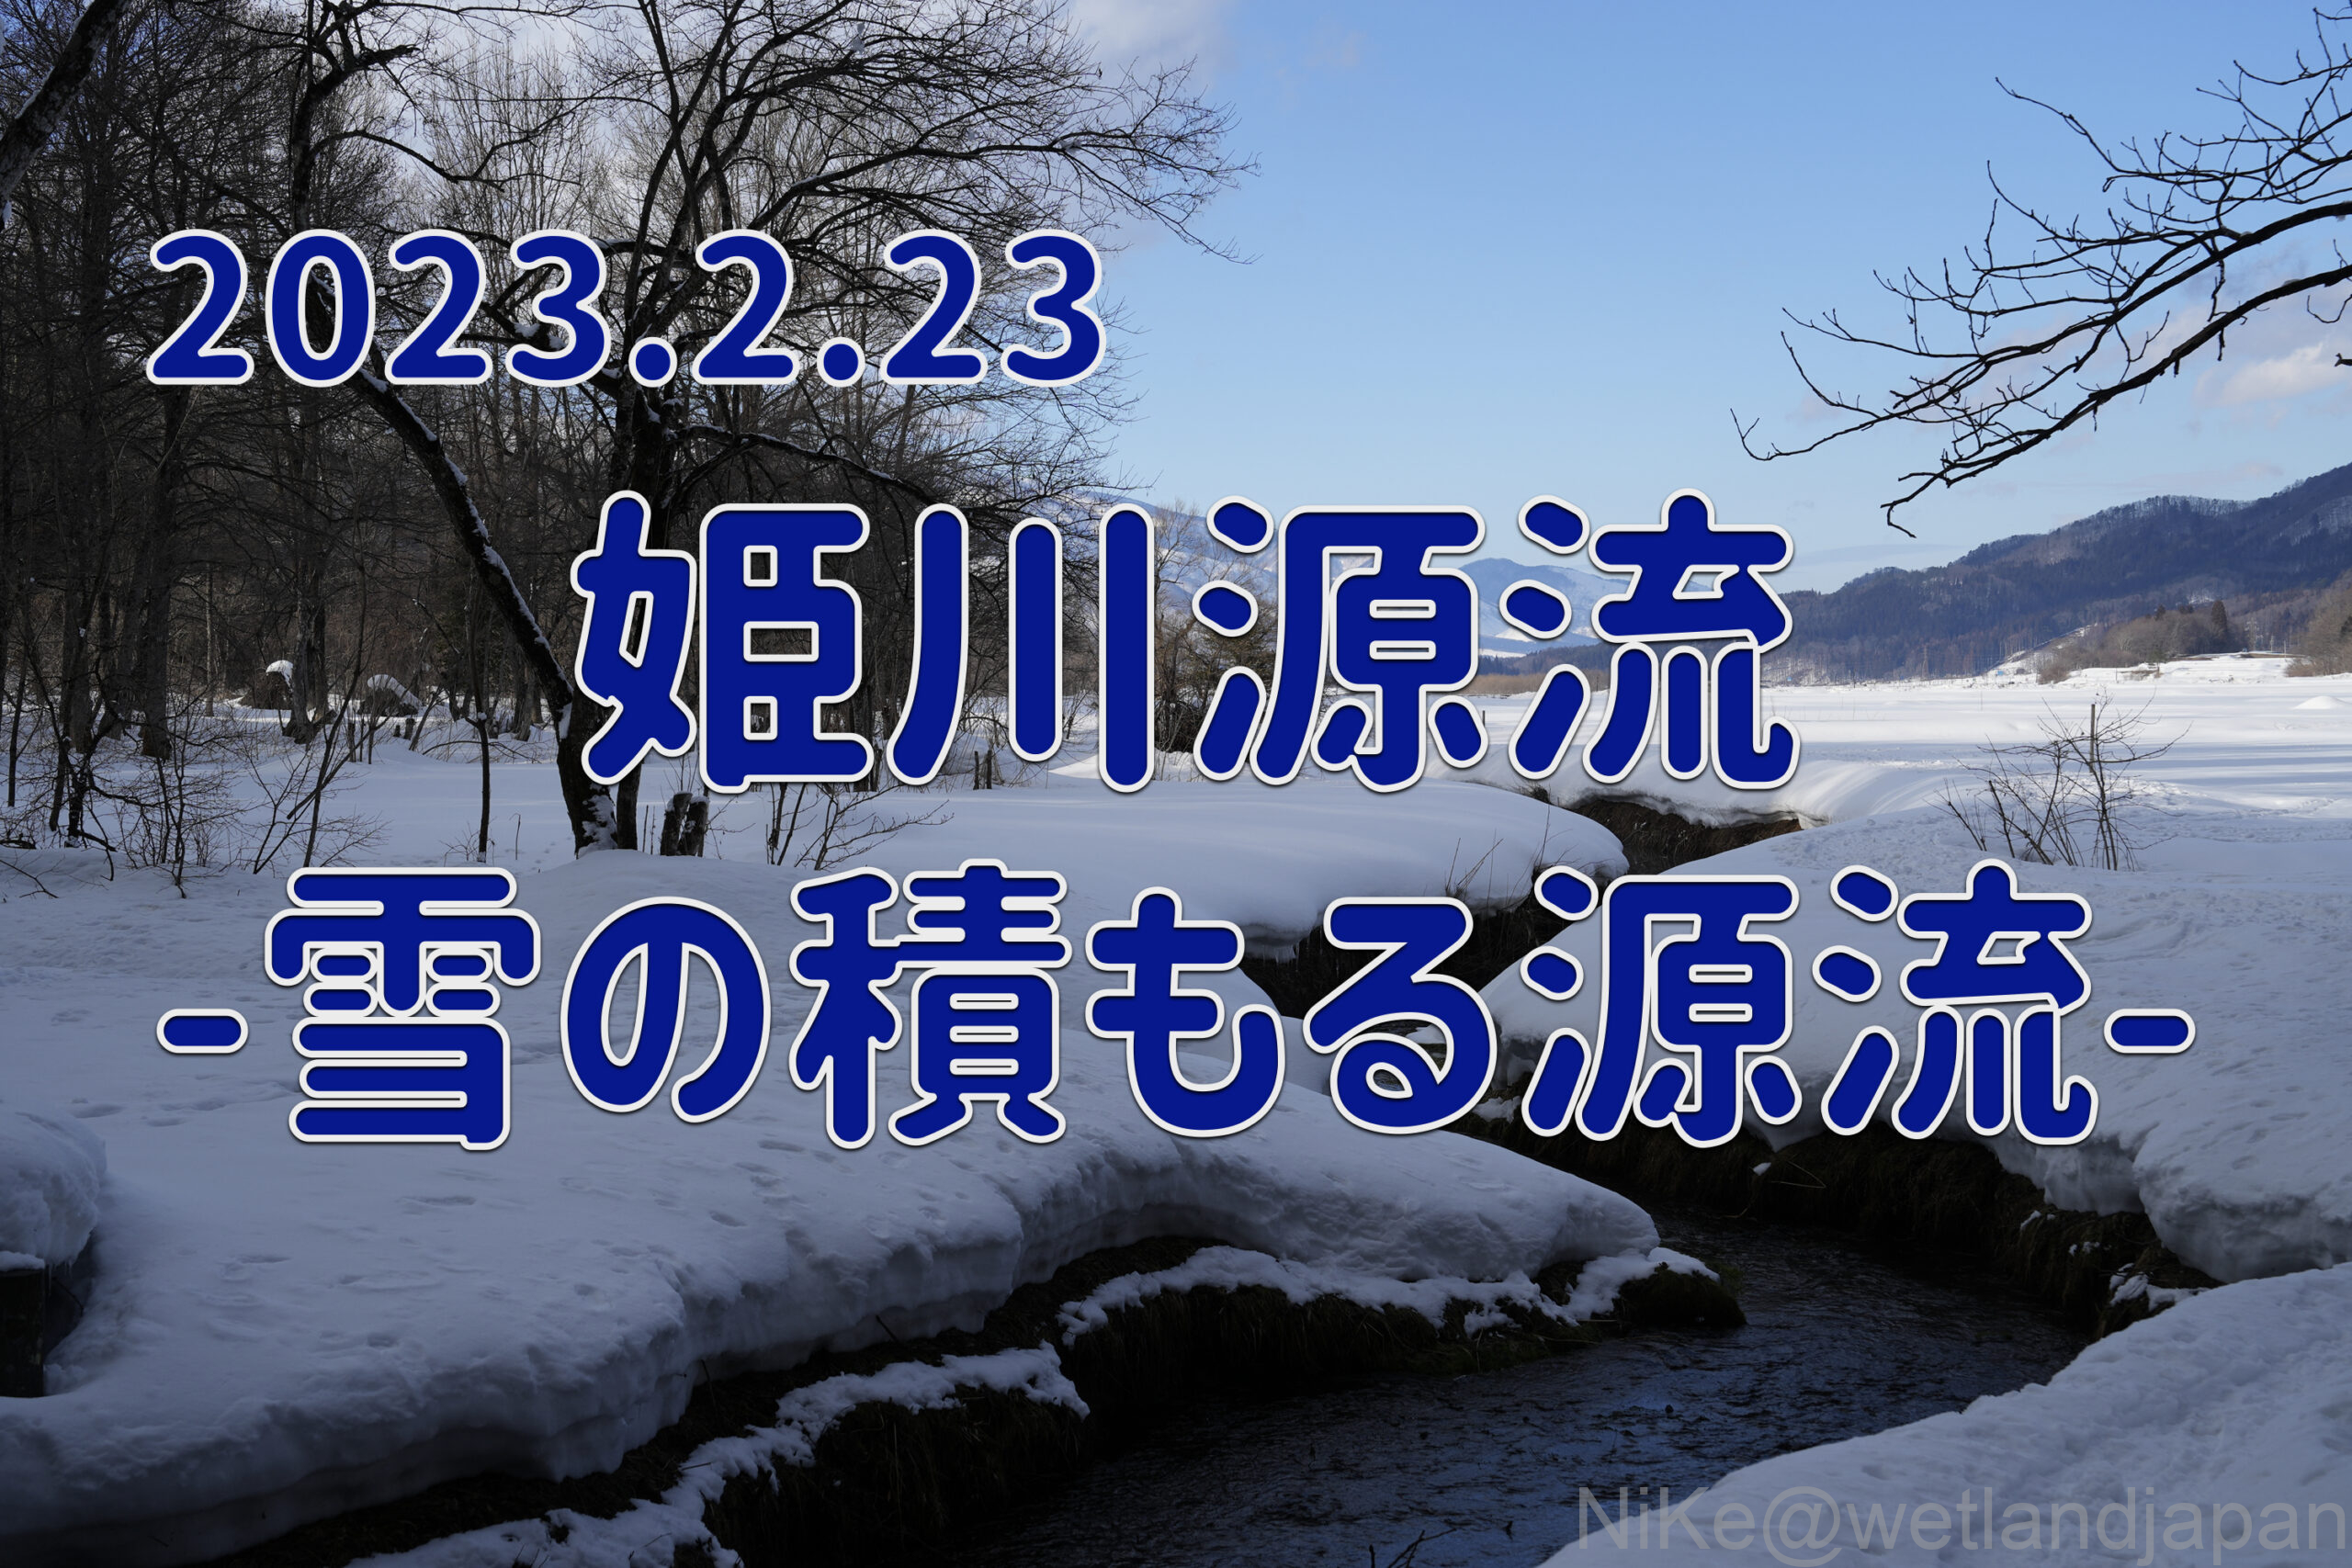 2023.2.23 姫川源流-雪の積もる源流-